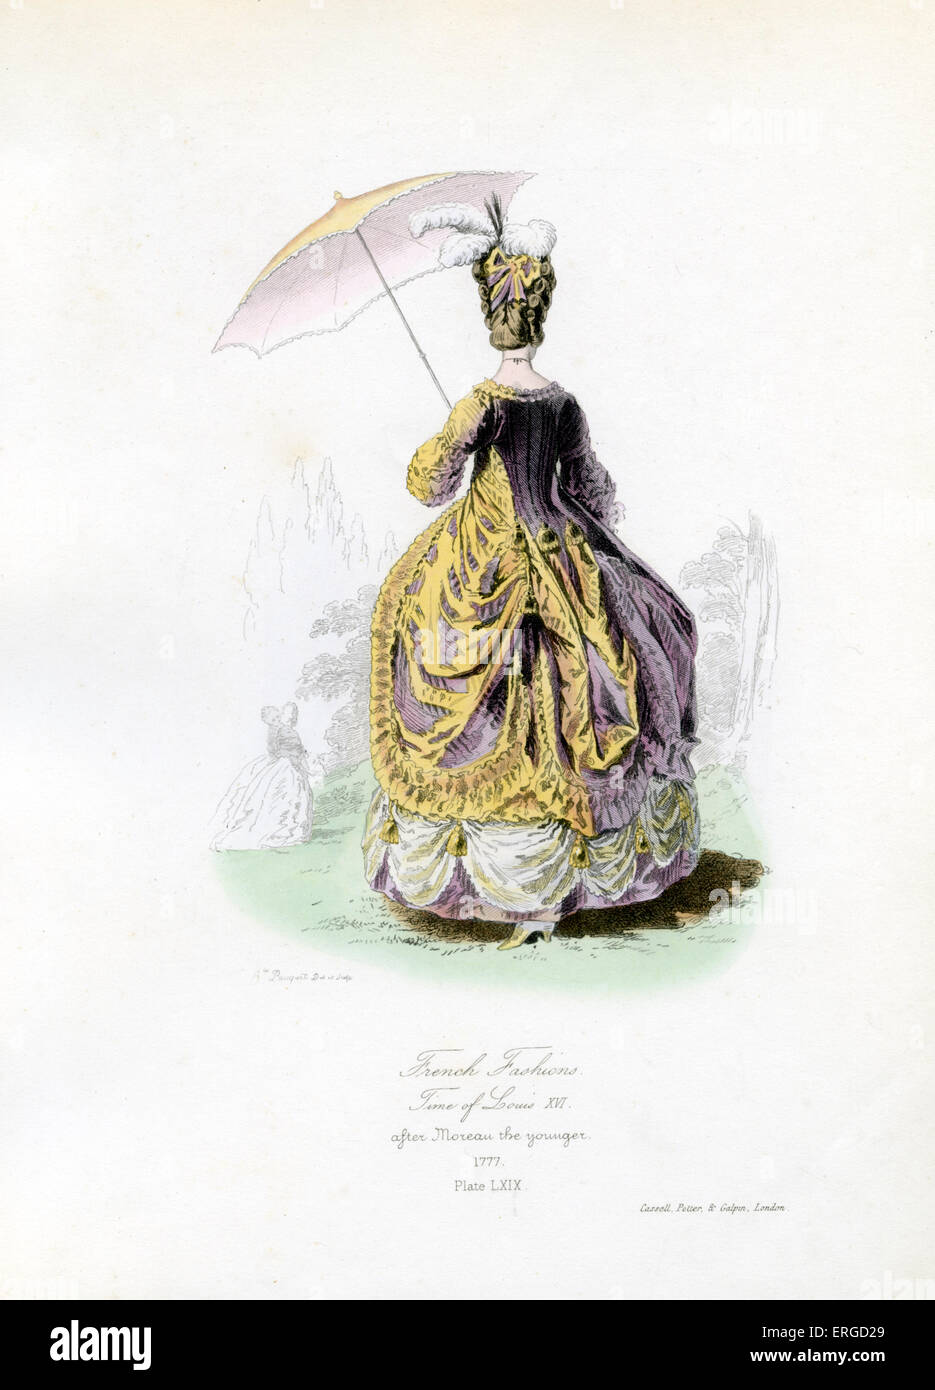 La moda francesa de la época de Luis XVI, 1777 - desde el grabado por Hippolyte Pauquet después Moreau el joven. LXVI, Rey de Foto de stock